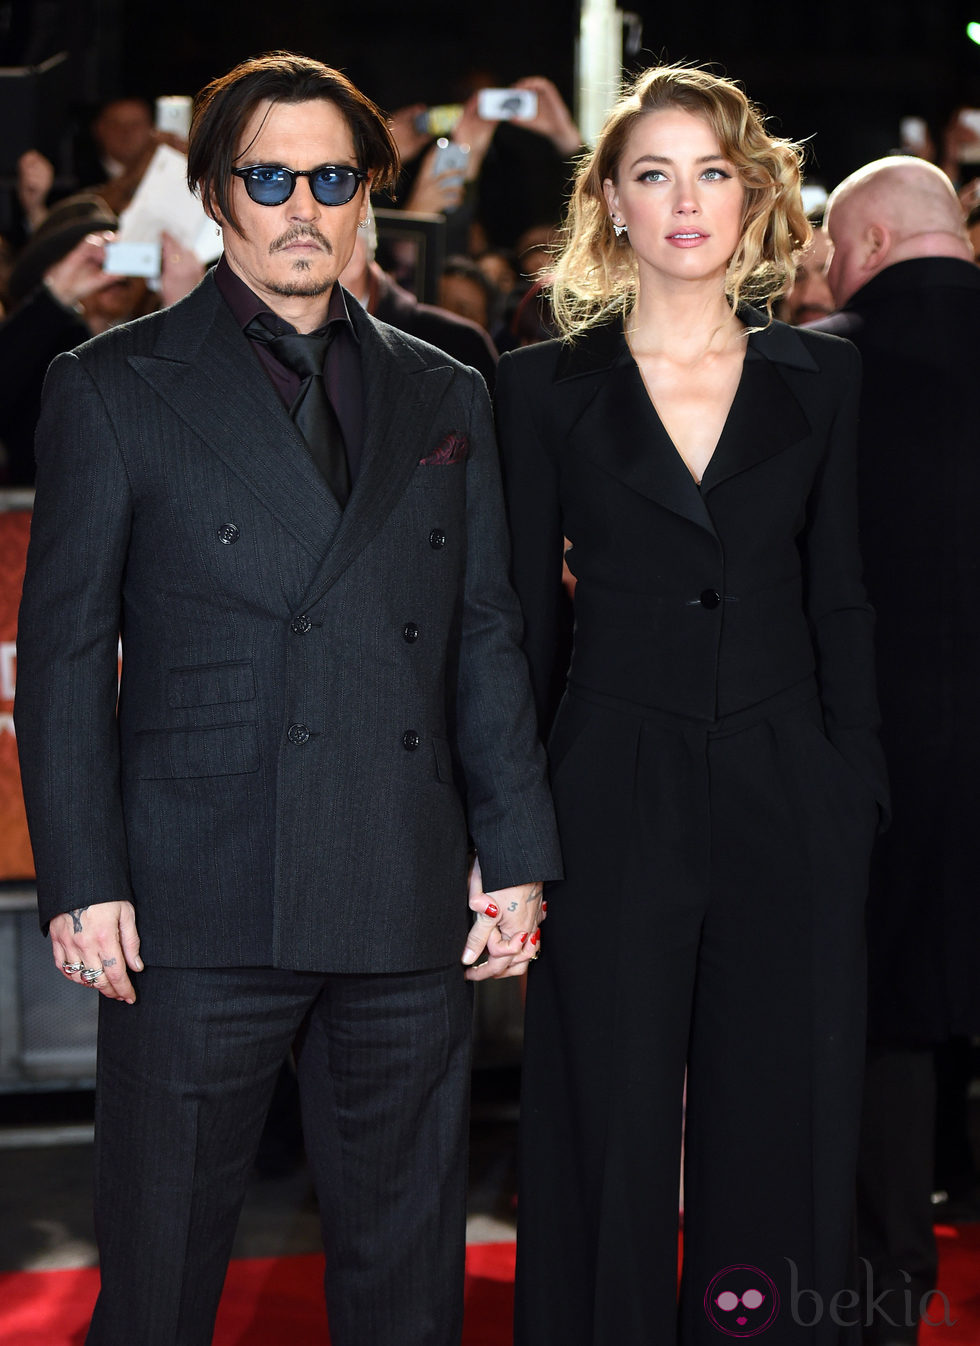 Johnny Depp y Amber Heard en la presentación de 'Mortdecai' en Londres